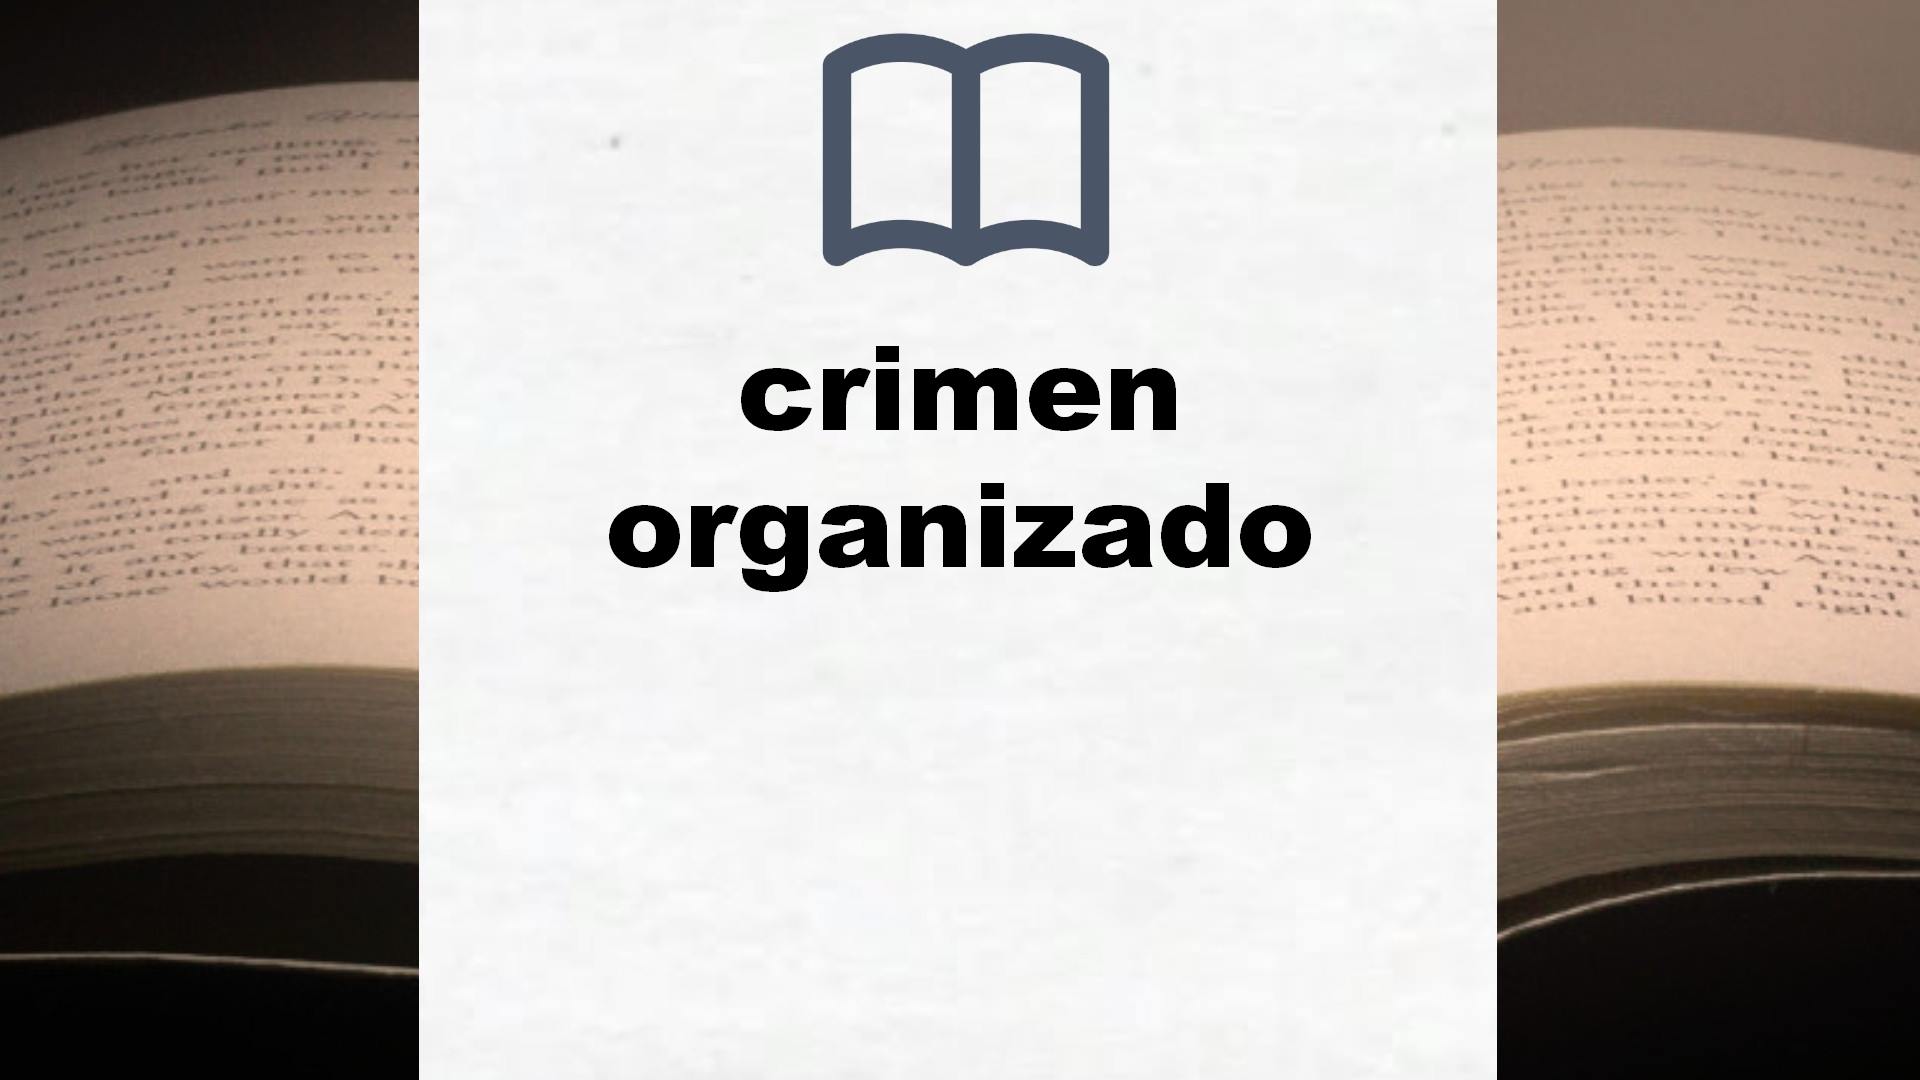 Libros sobre crimen organizado